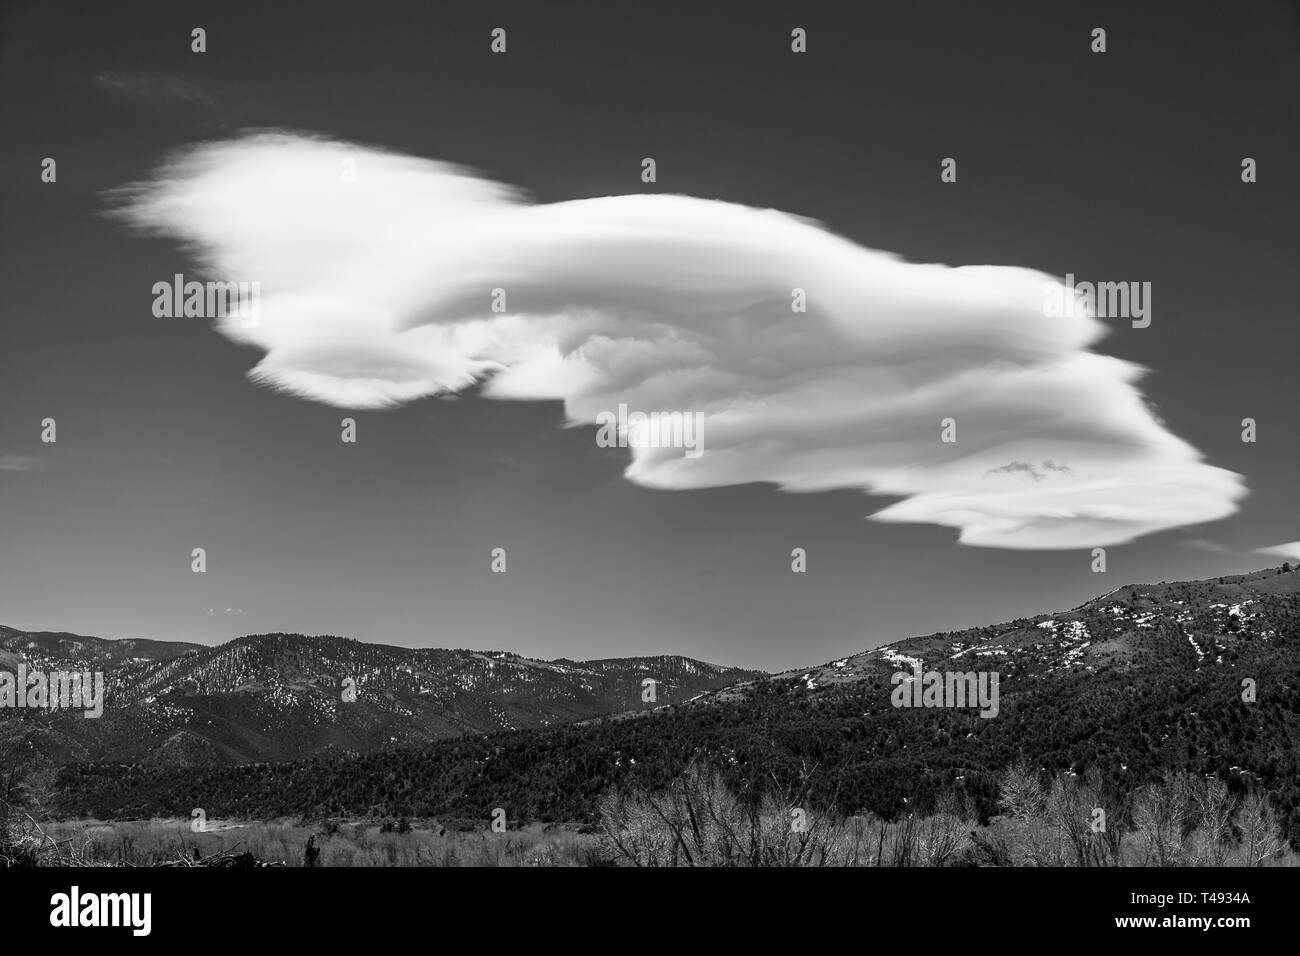 Schwarz & Weiß der ungewöhnliche Wolkenformationen gegen klare cobalt blue sky; Methodistischen Berg; zentrale Colorado, USA Stockfoto